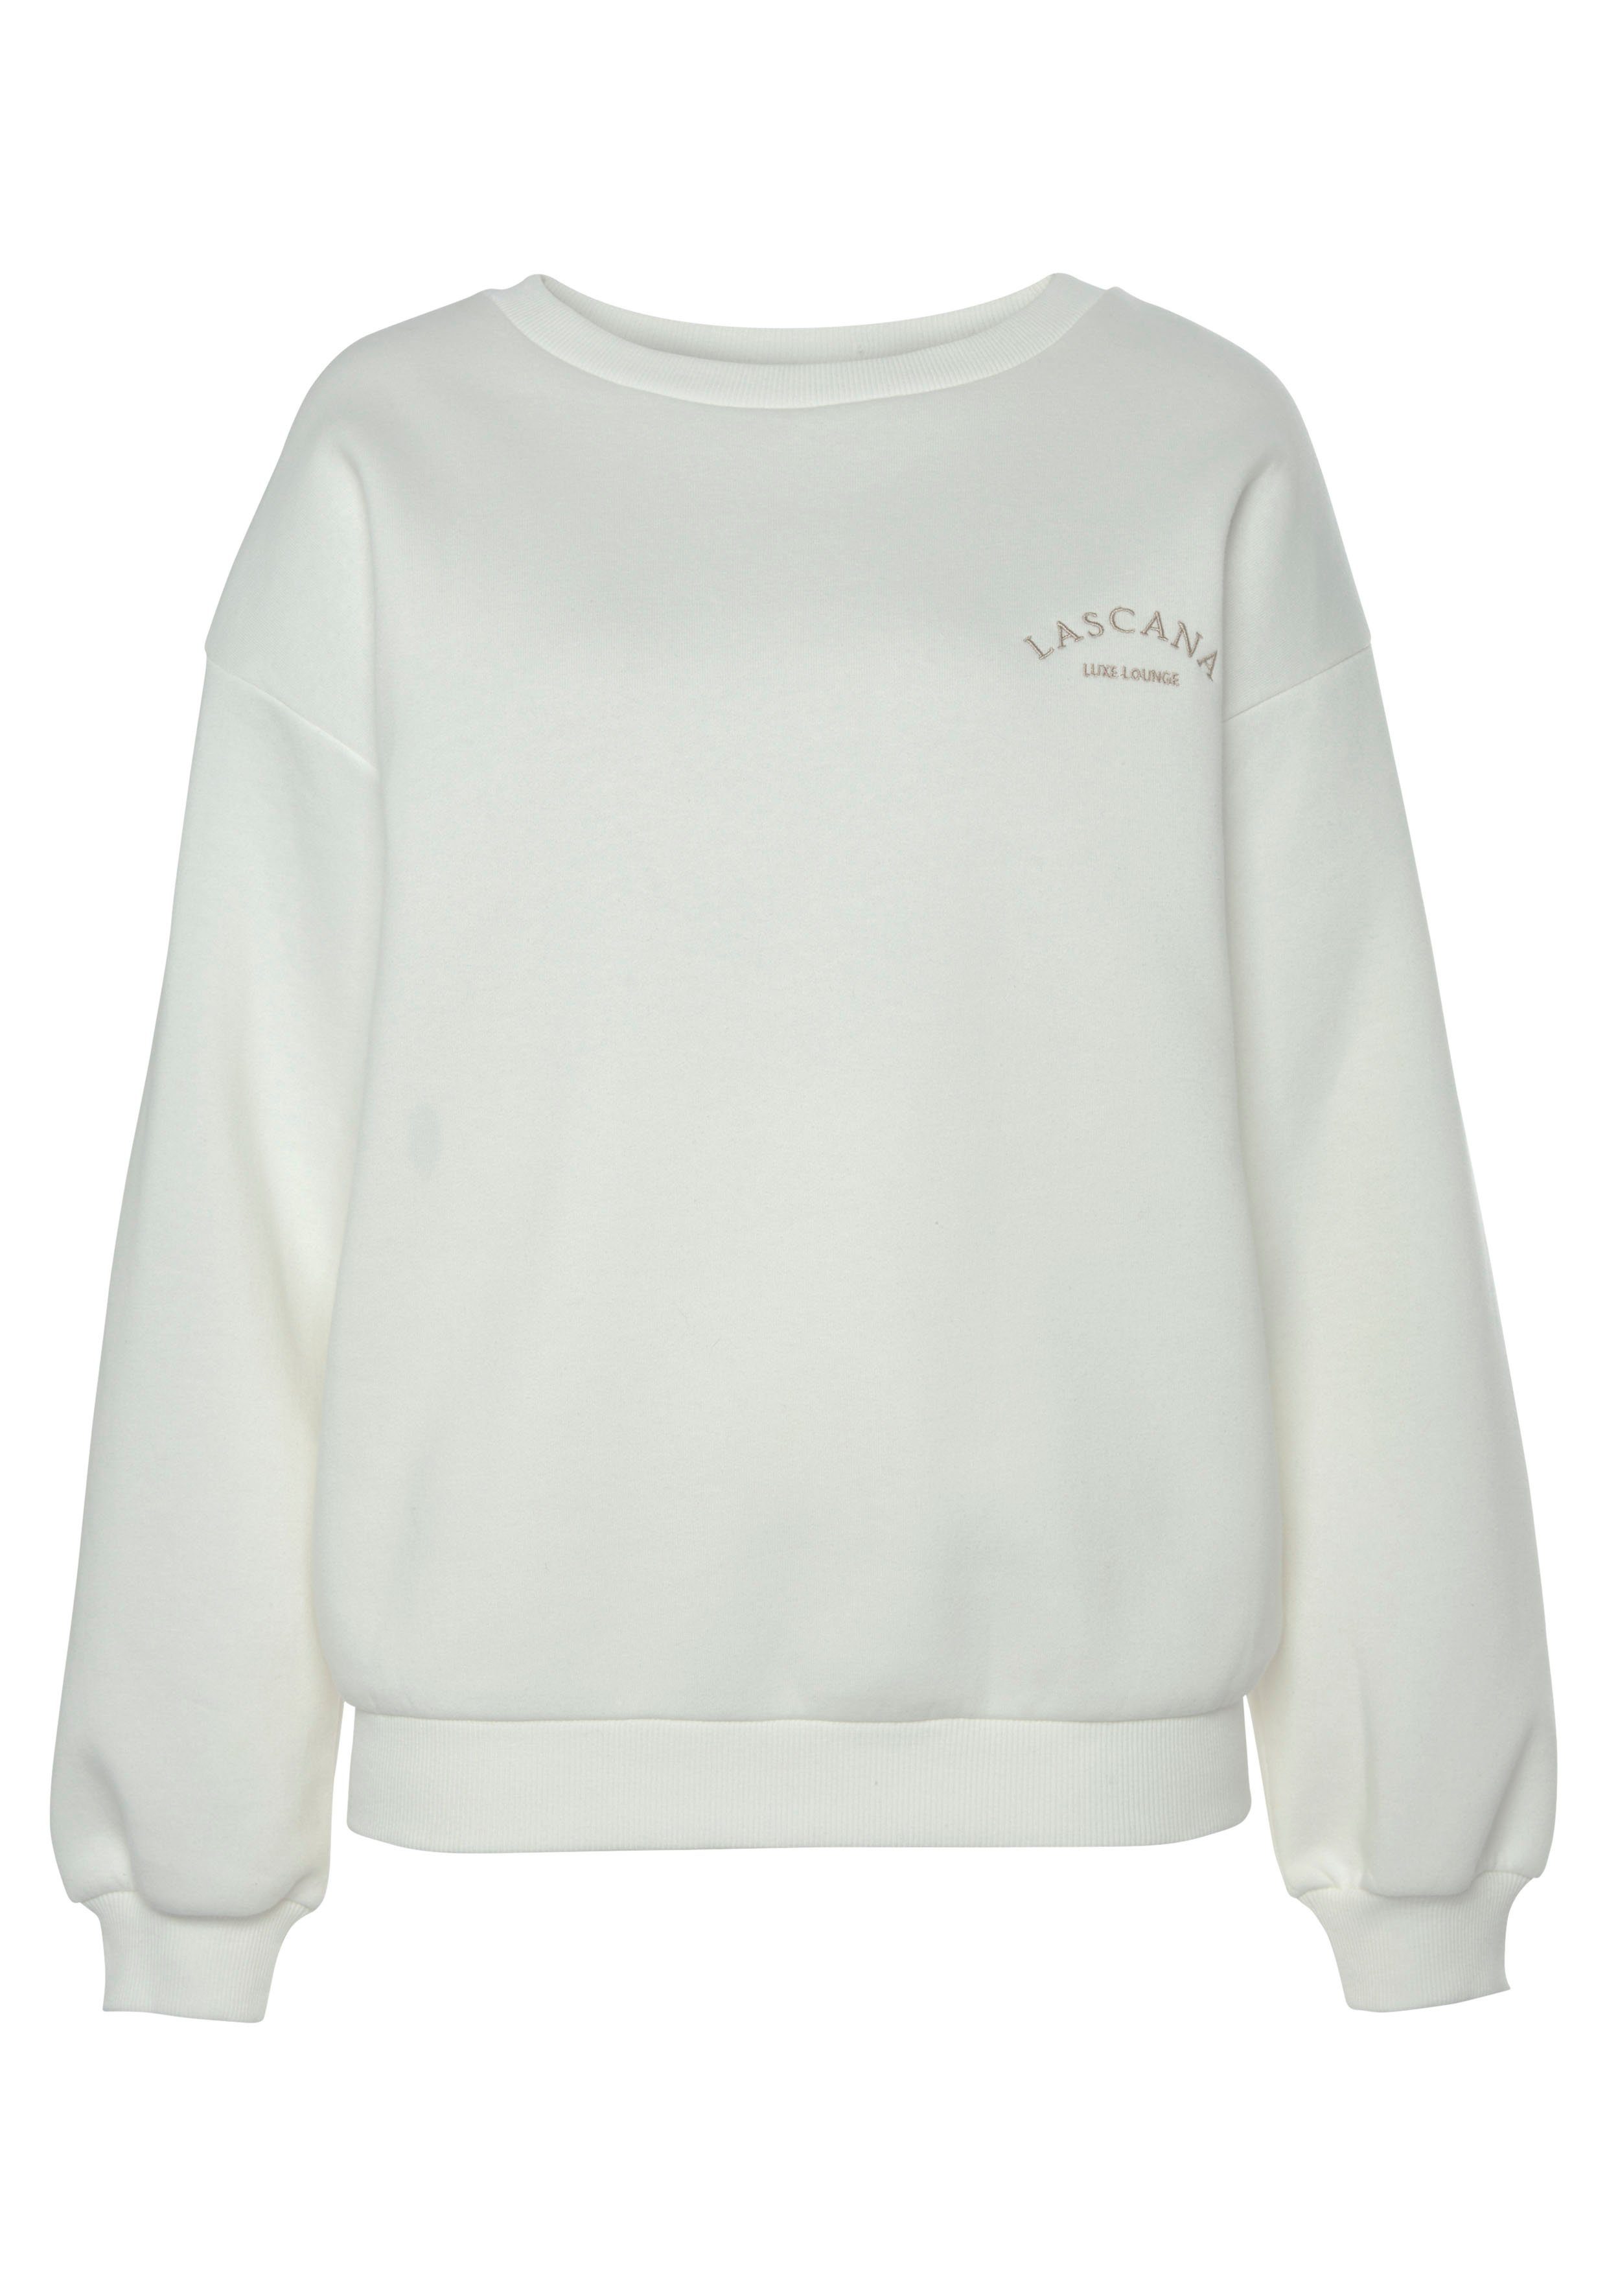 LASCANA Sweatshirt -Pullover weiten creme Loungewear, mit Ärmeln, Loungeanzug